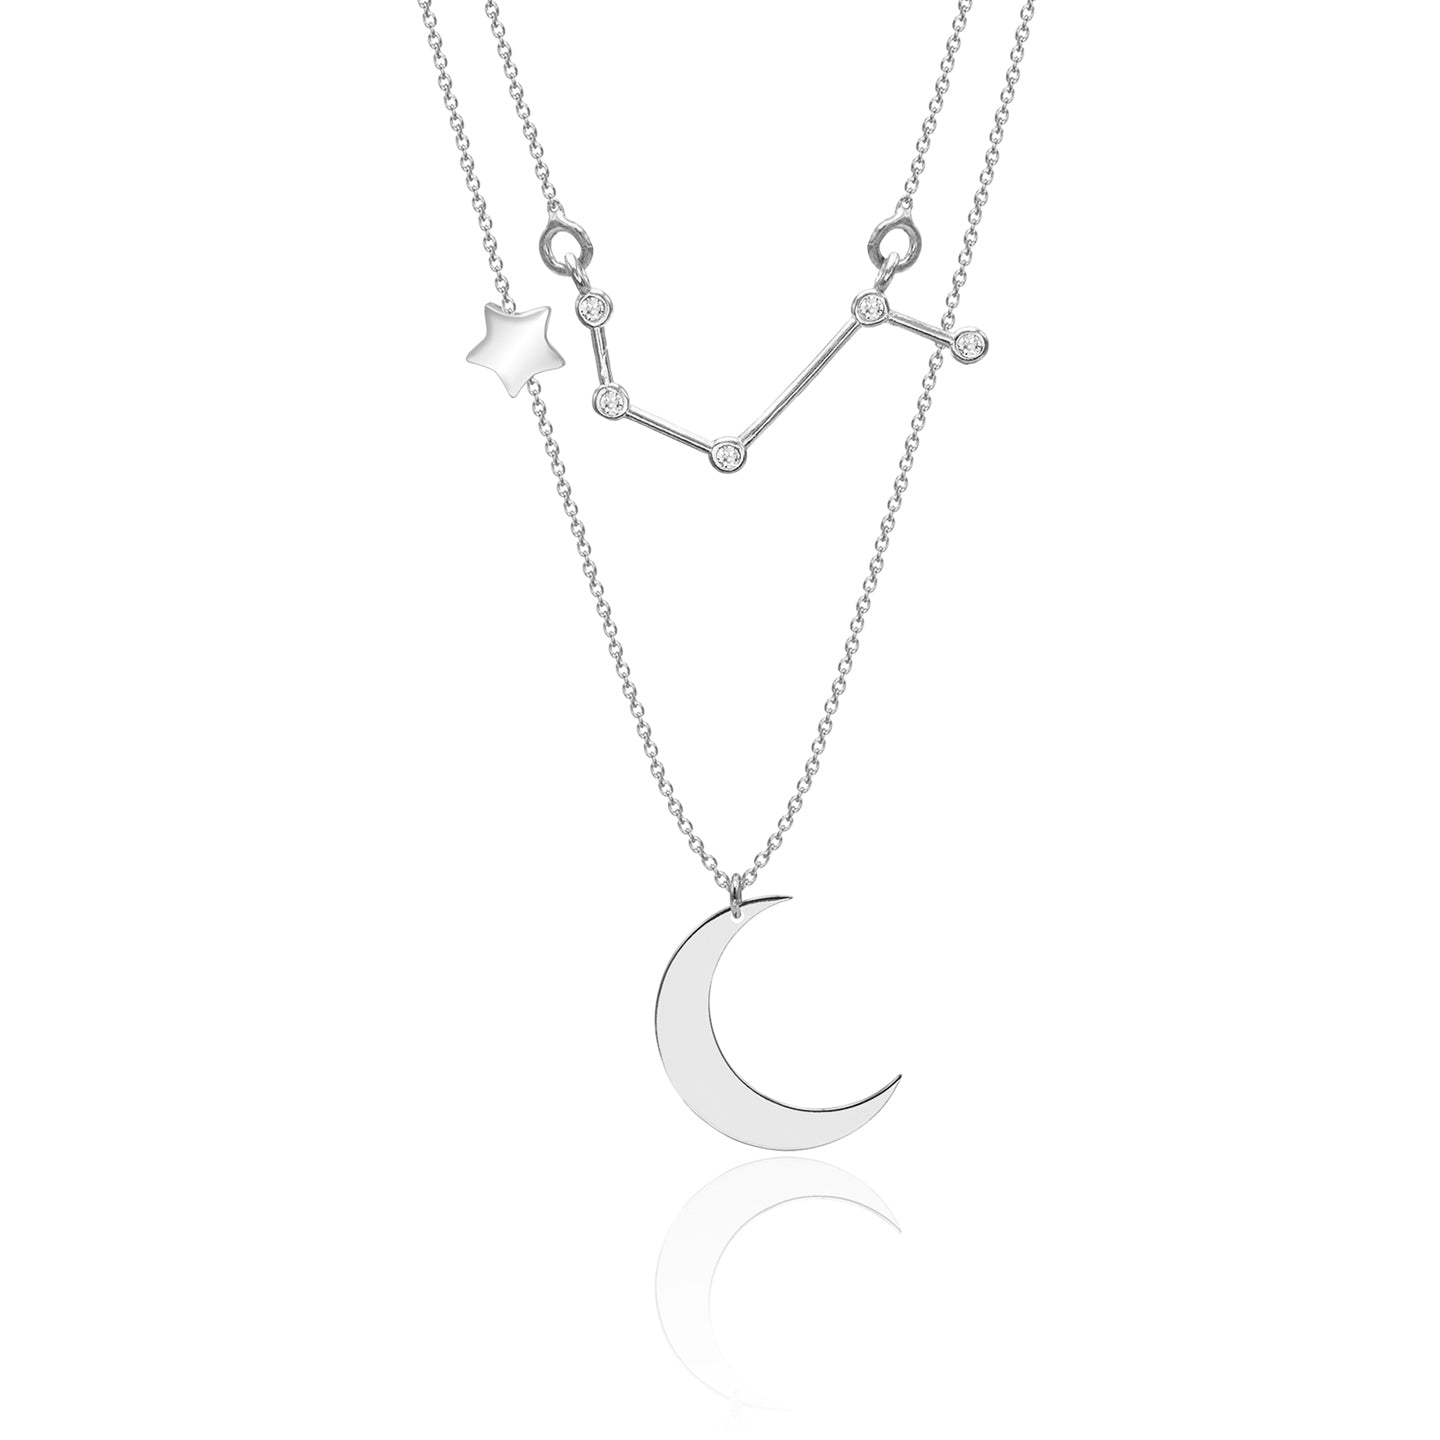 Lantisor dublu argint cu luna si constelatie Berbec